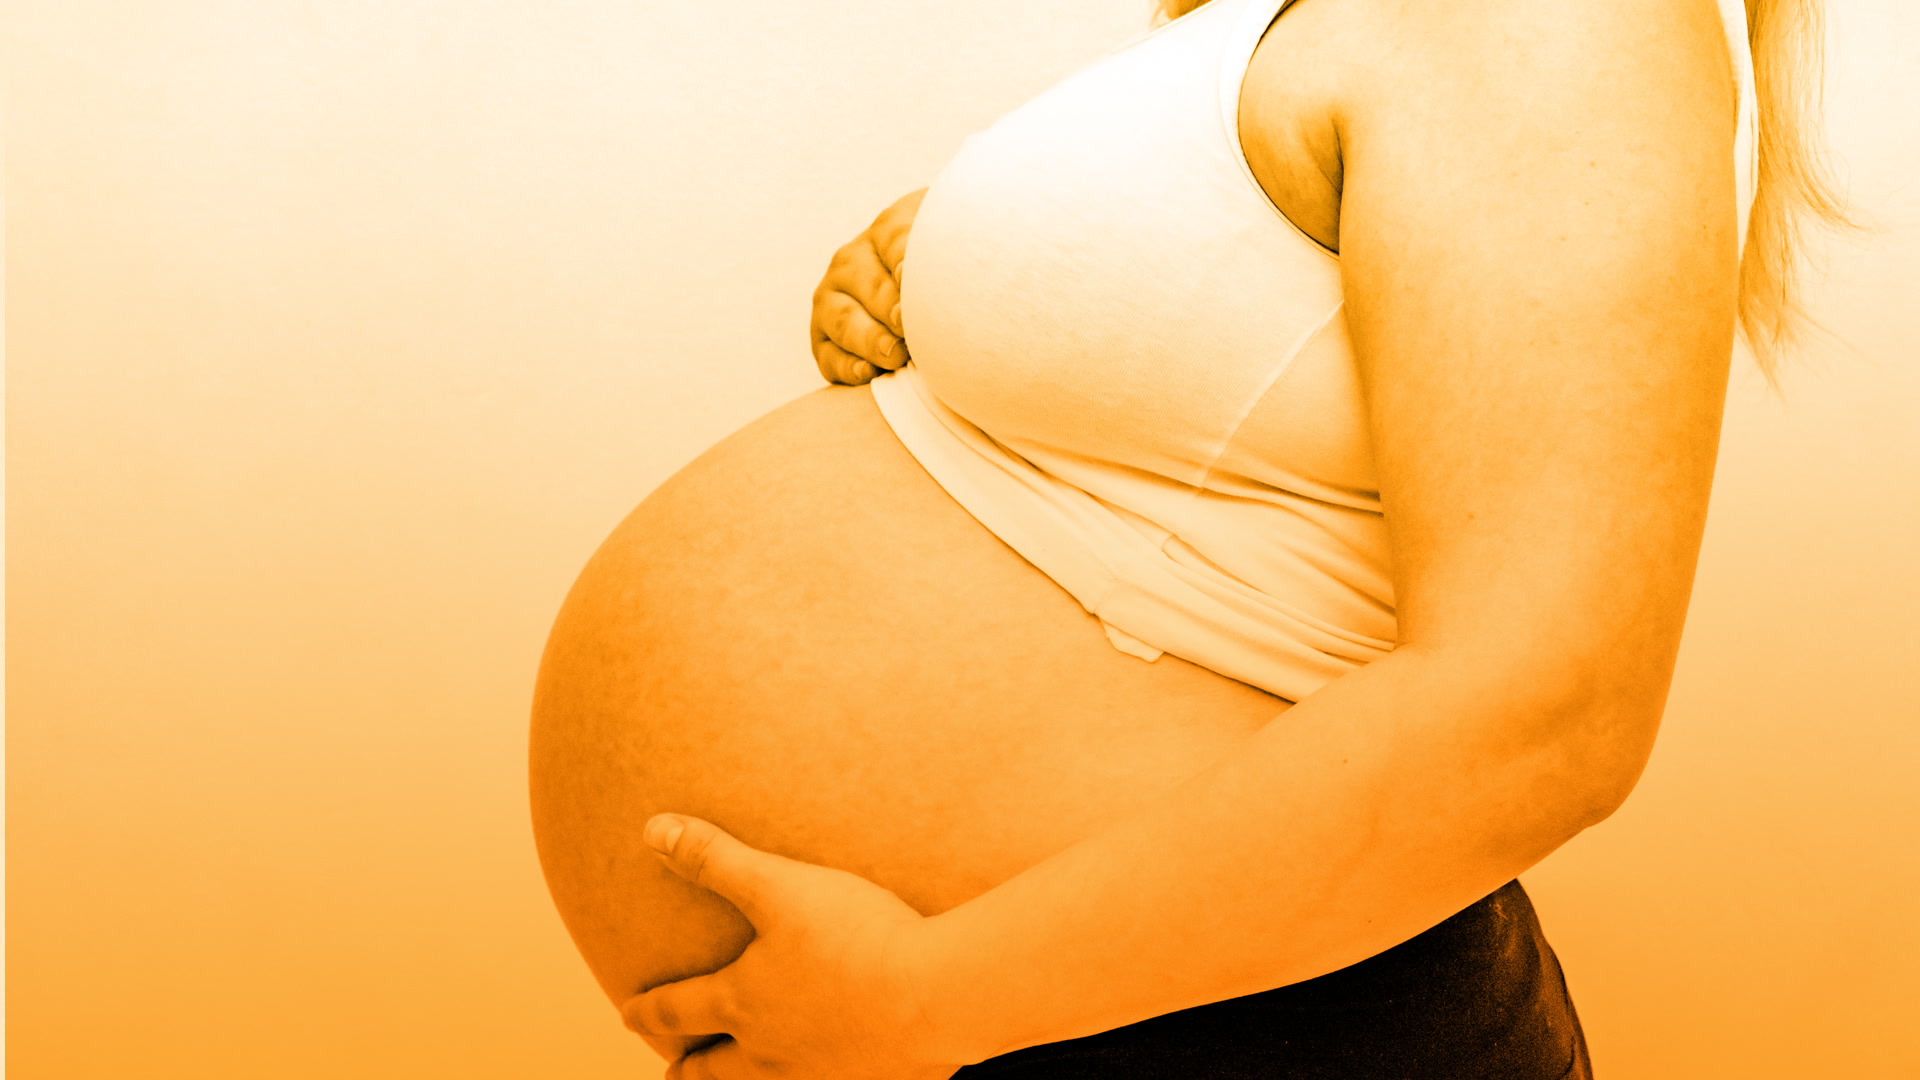 Inducción electiva para reducir el riesgo de cesárea durante el embarazo